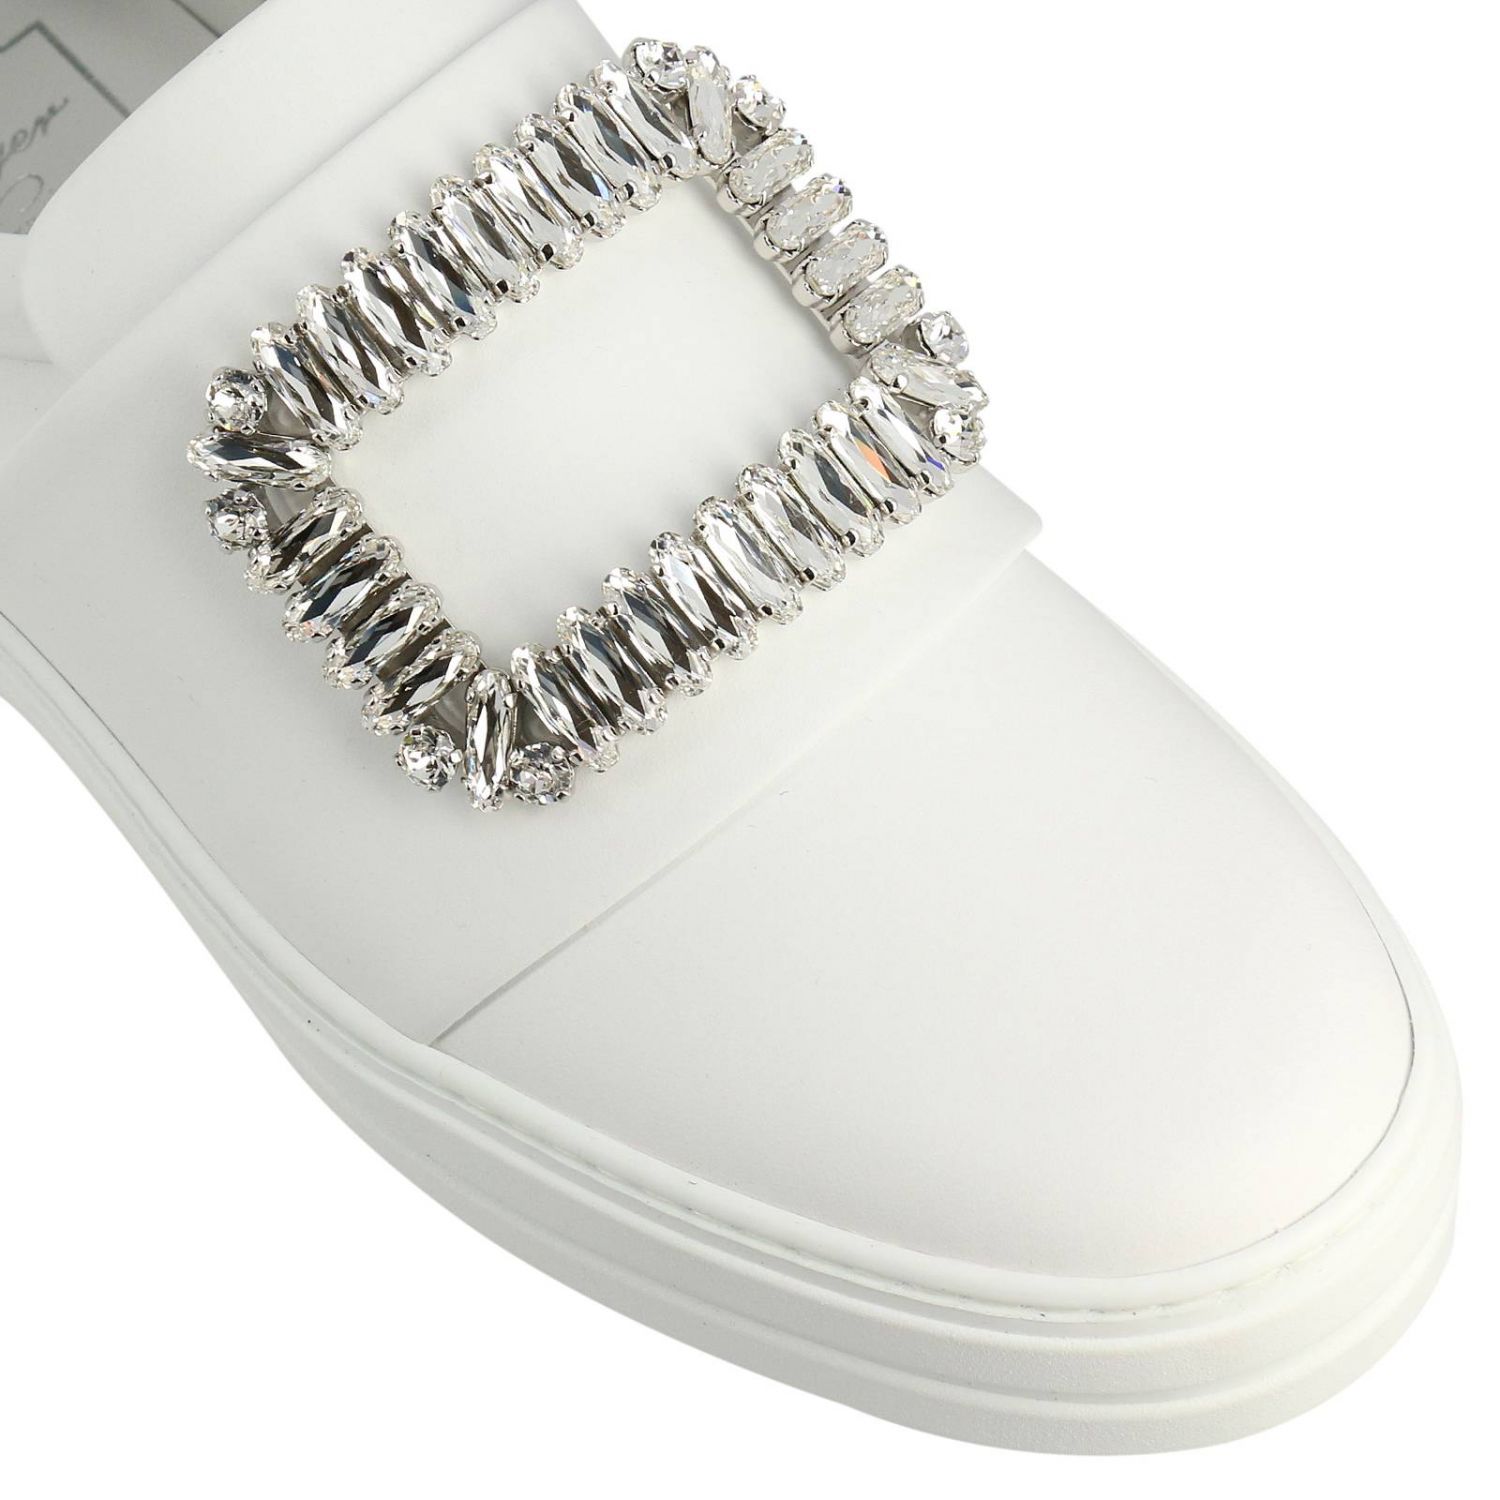 Sneakers Roger Vivier: Shoes women Roger Vivier white 3